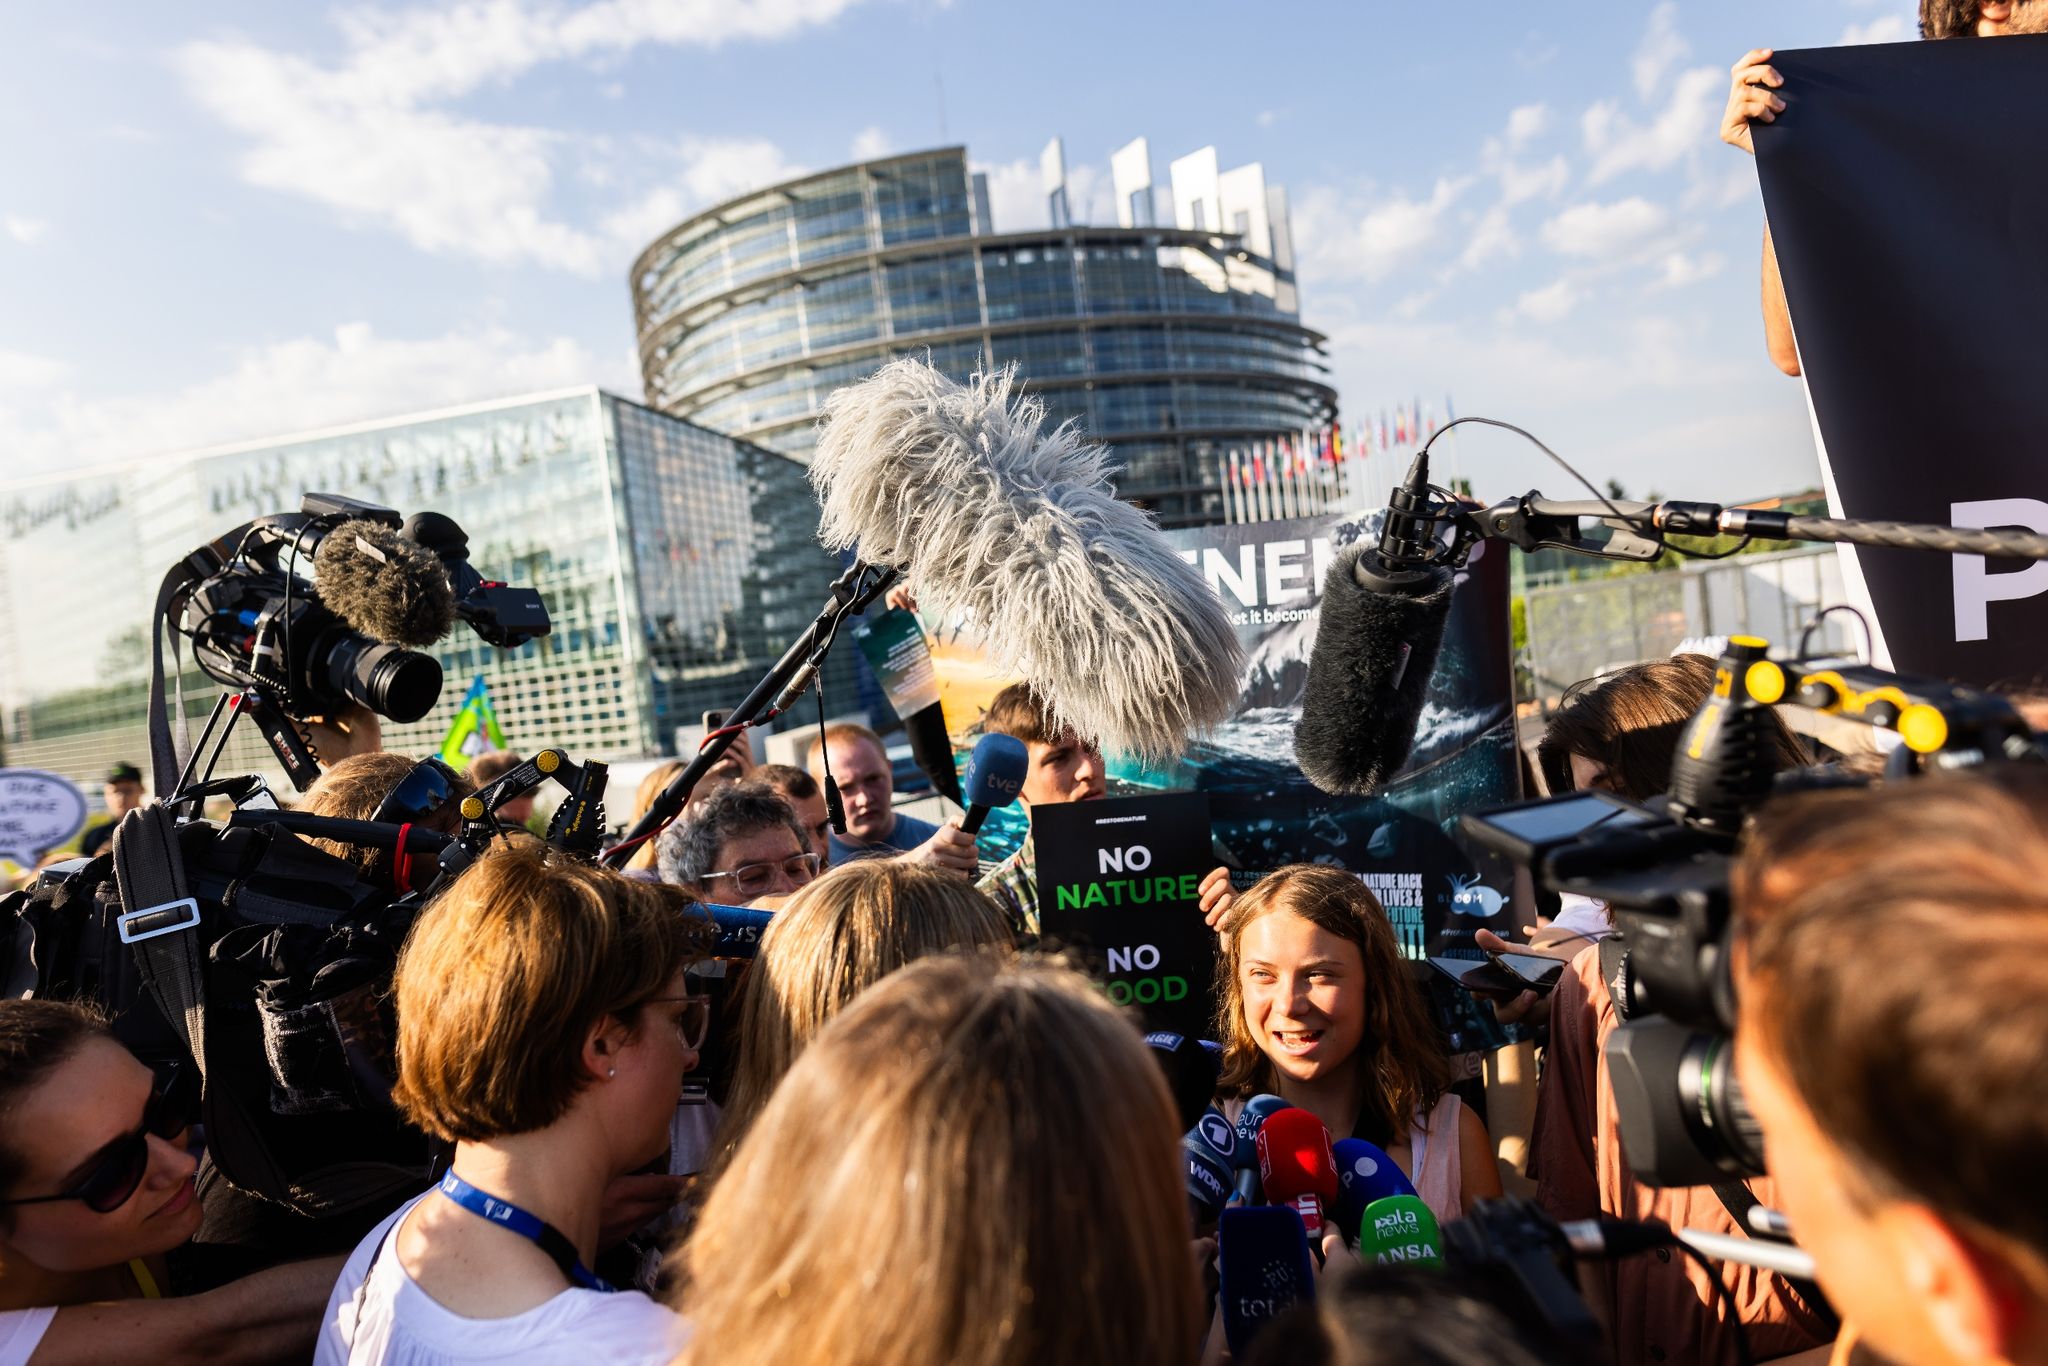 «Unsere Botschaft an die Politiker lautet, sich für die Natur und die Menschen statt für Profit und Gier zu entscheiden», sagte die schwedische Klimaaktivistin Greta Thunberg gestern vor dem Europaparlament.